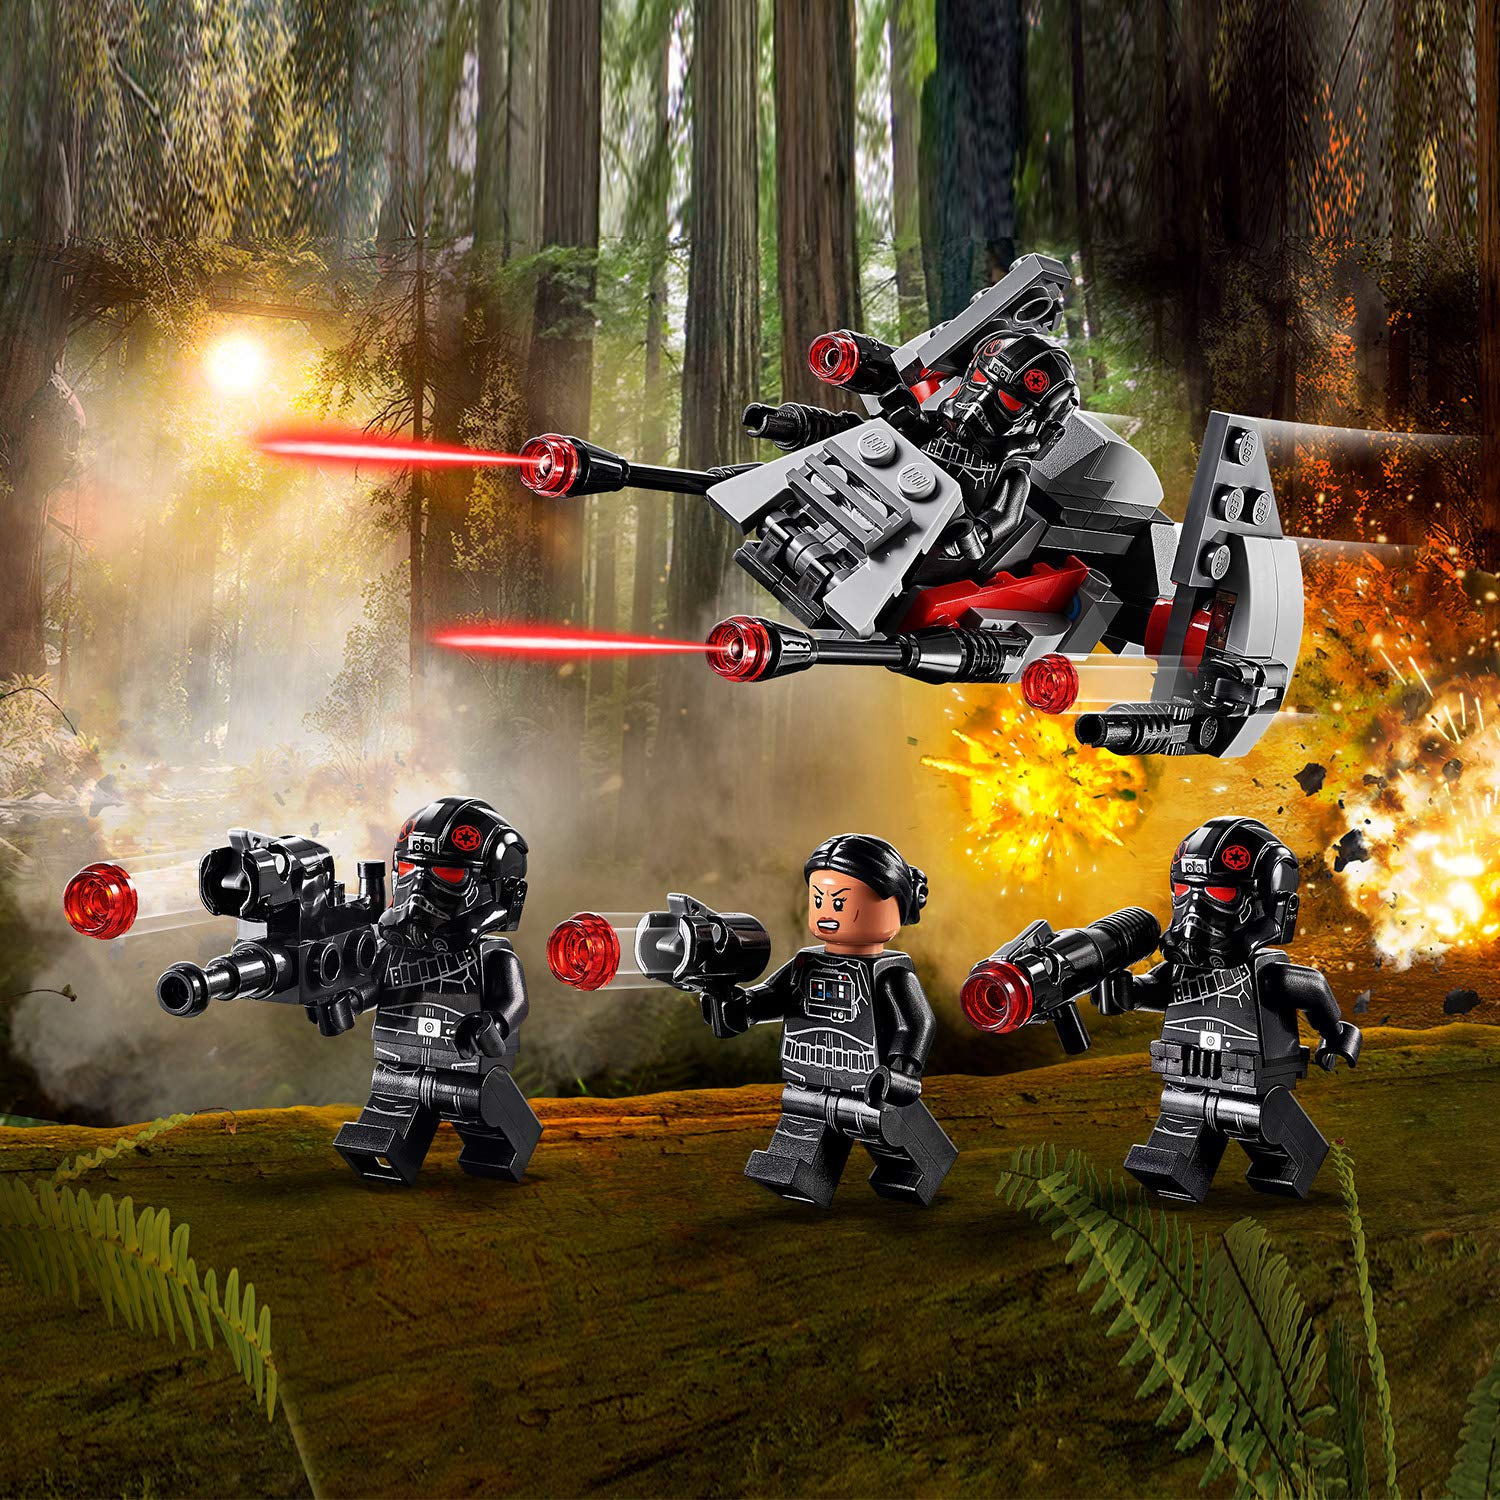 Конструктор LEGO Star Wars - Боевой набор отряда 